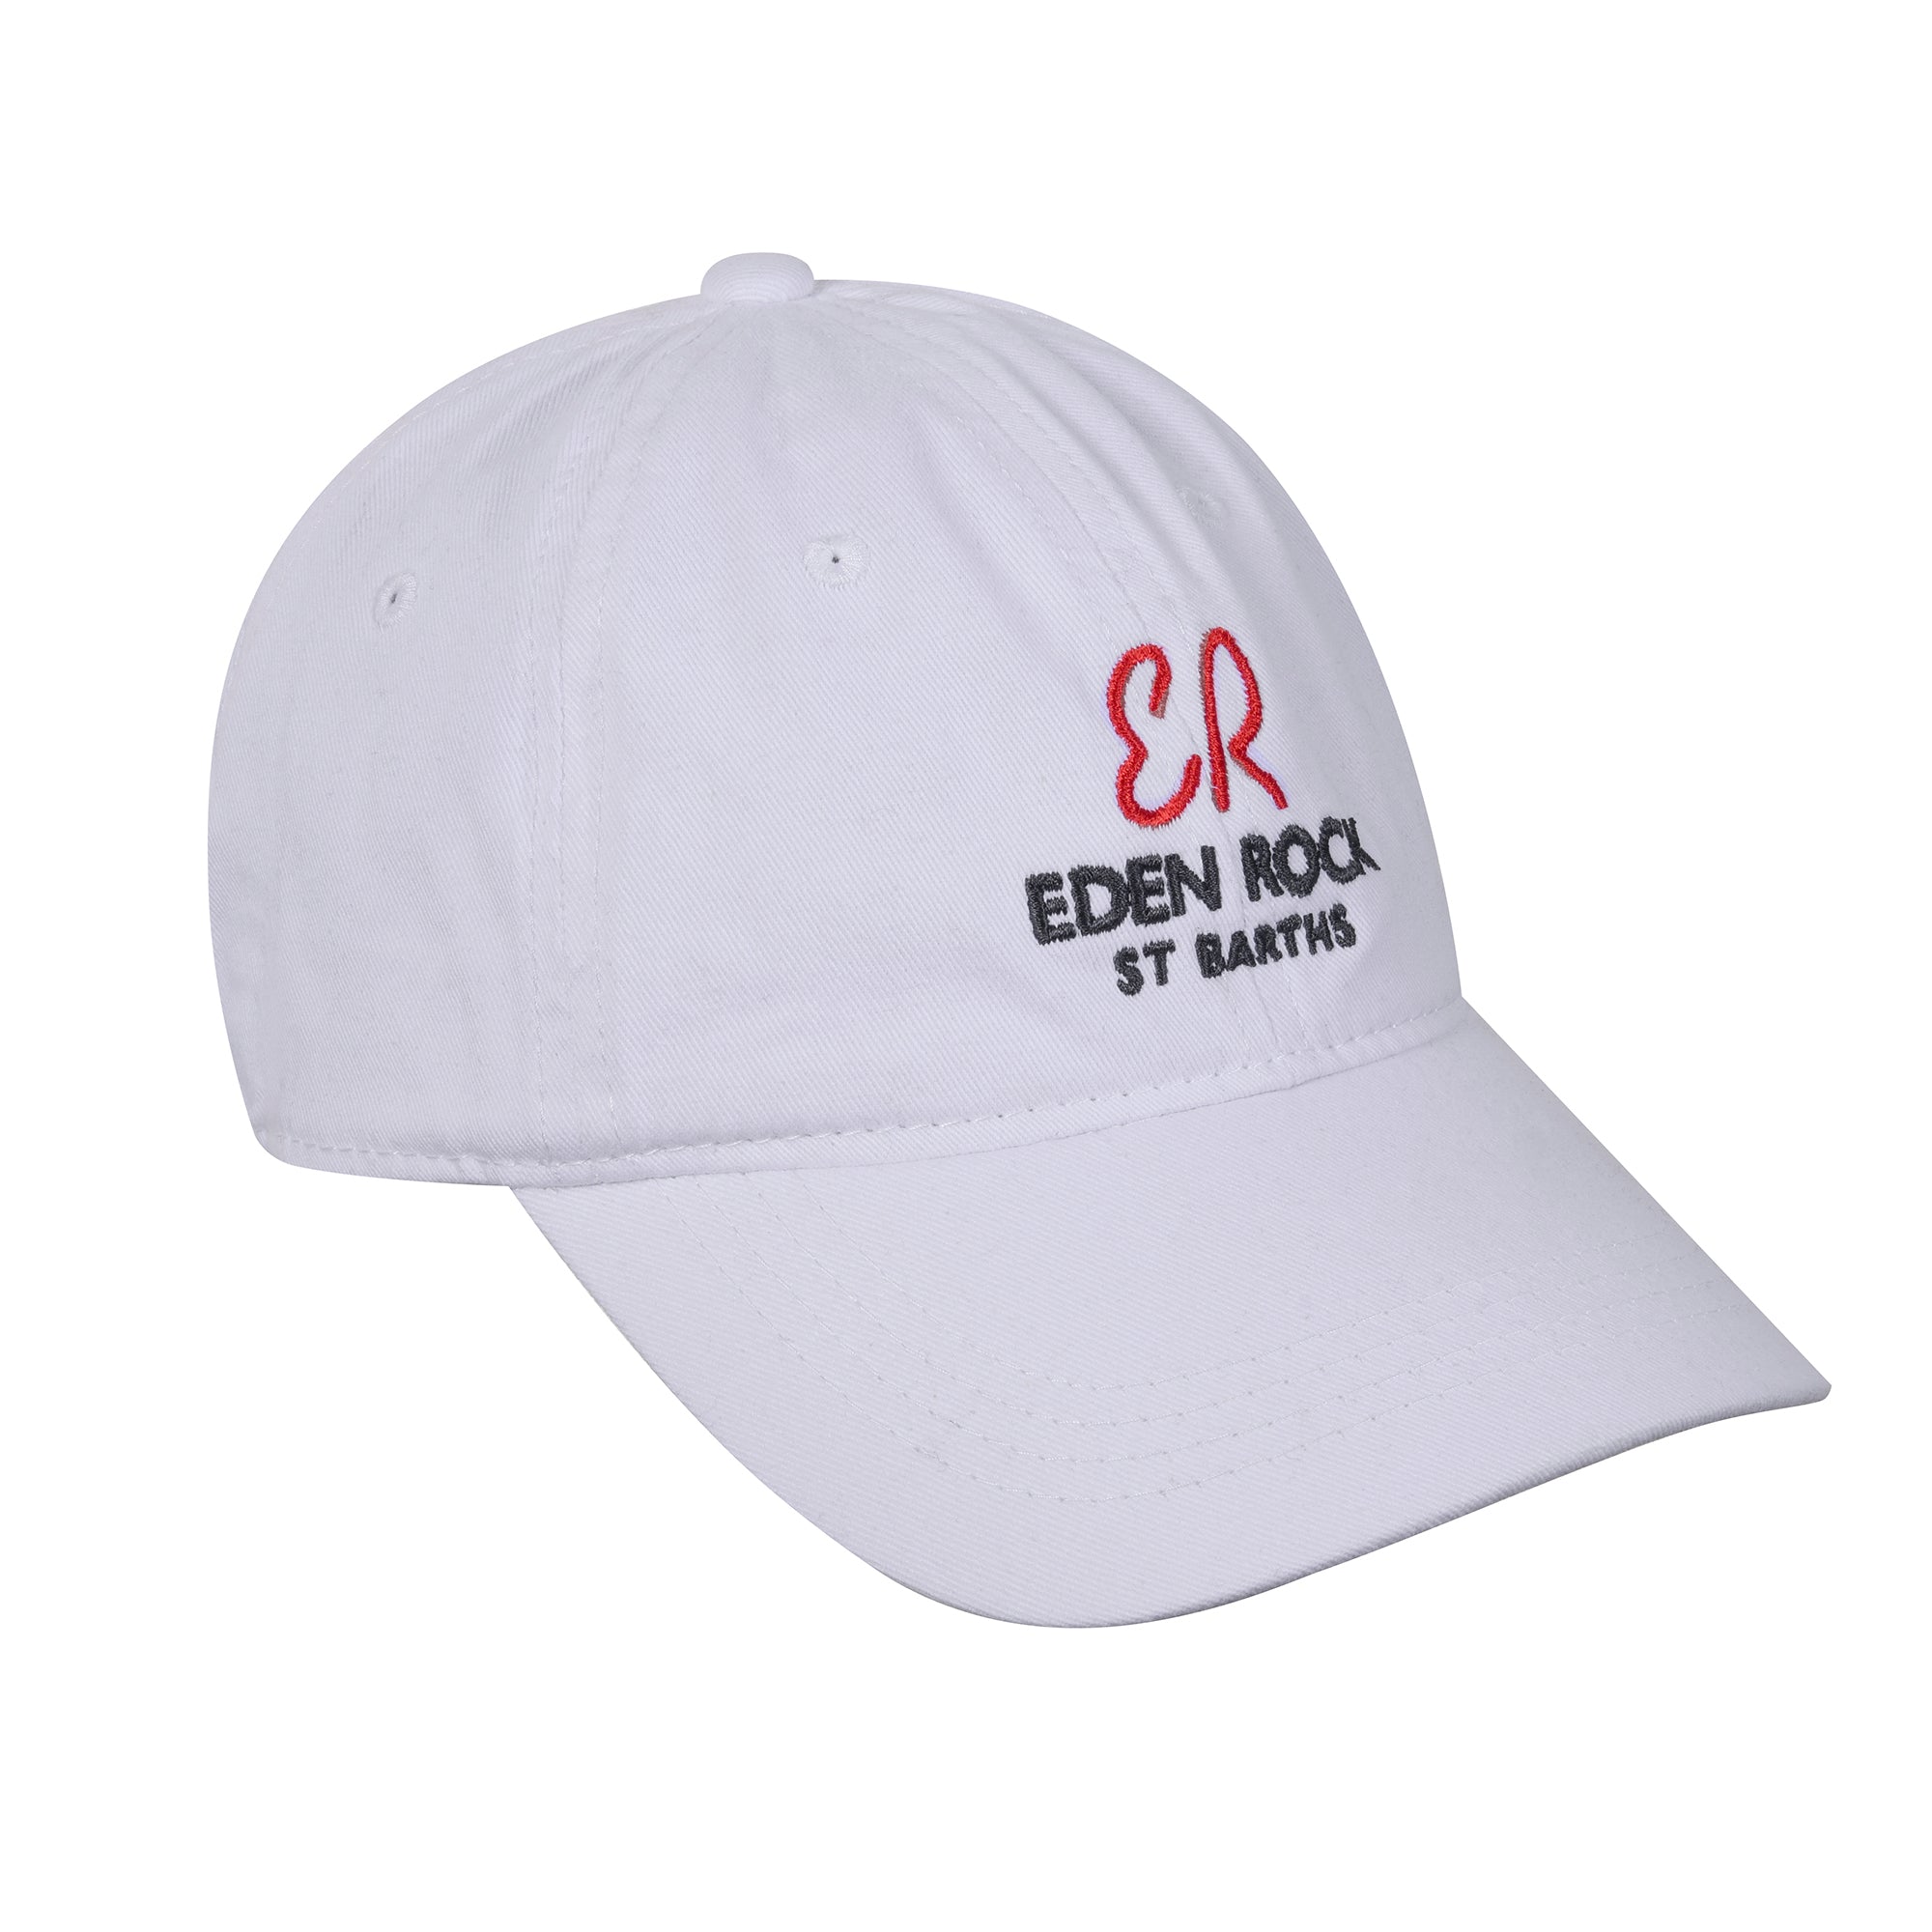 Eden Rock - St Barths Baseball Cap - Oetker Collection Hotels Boutique